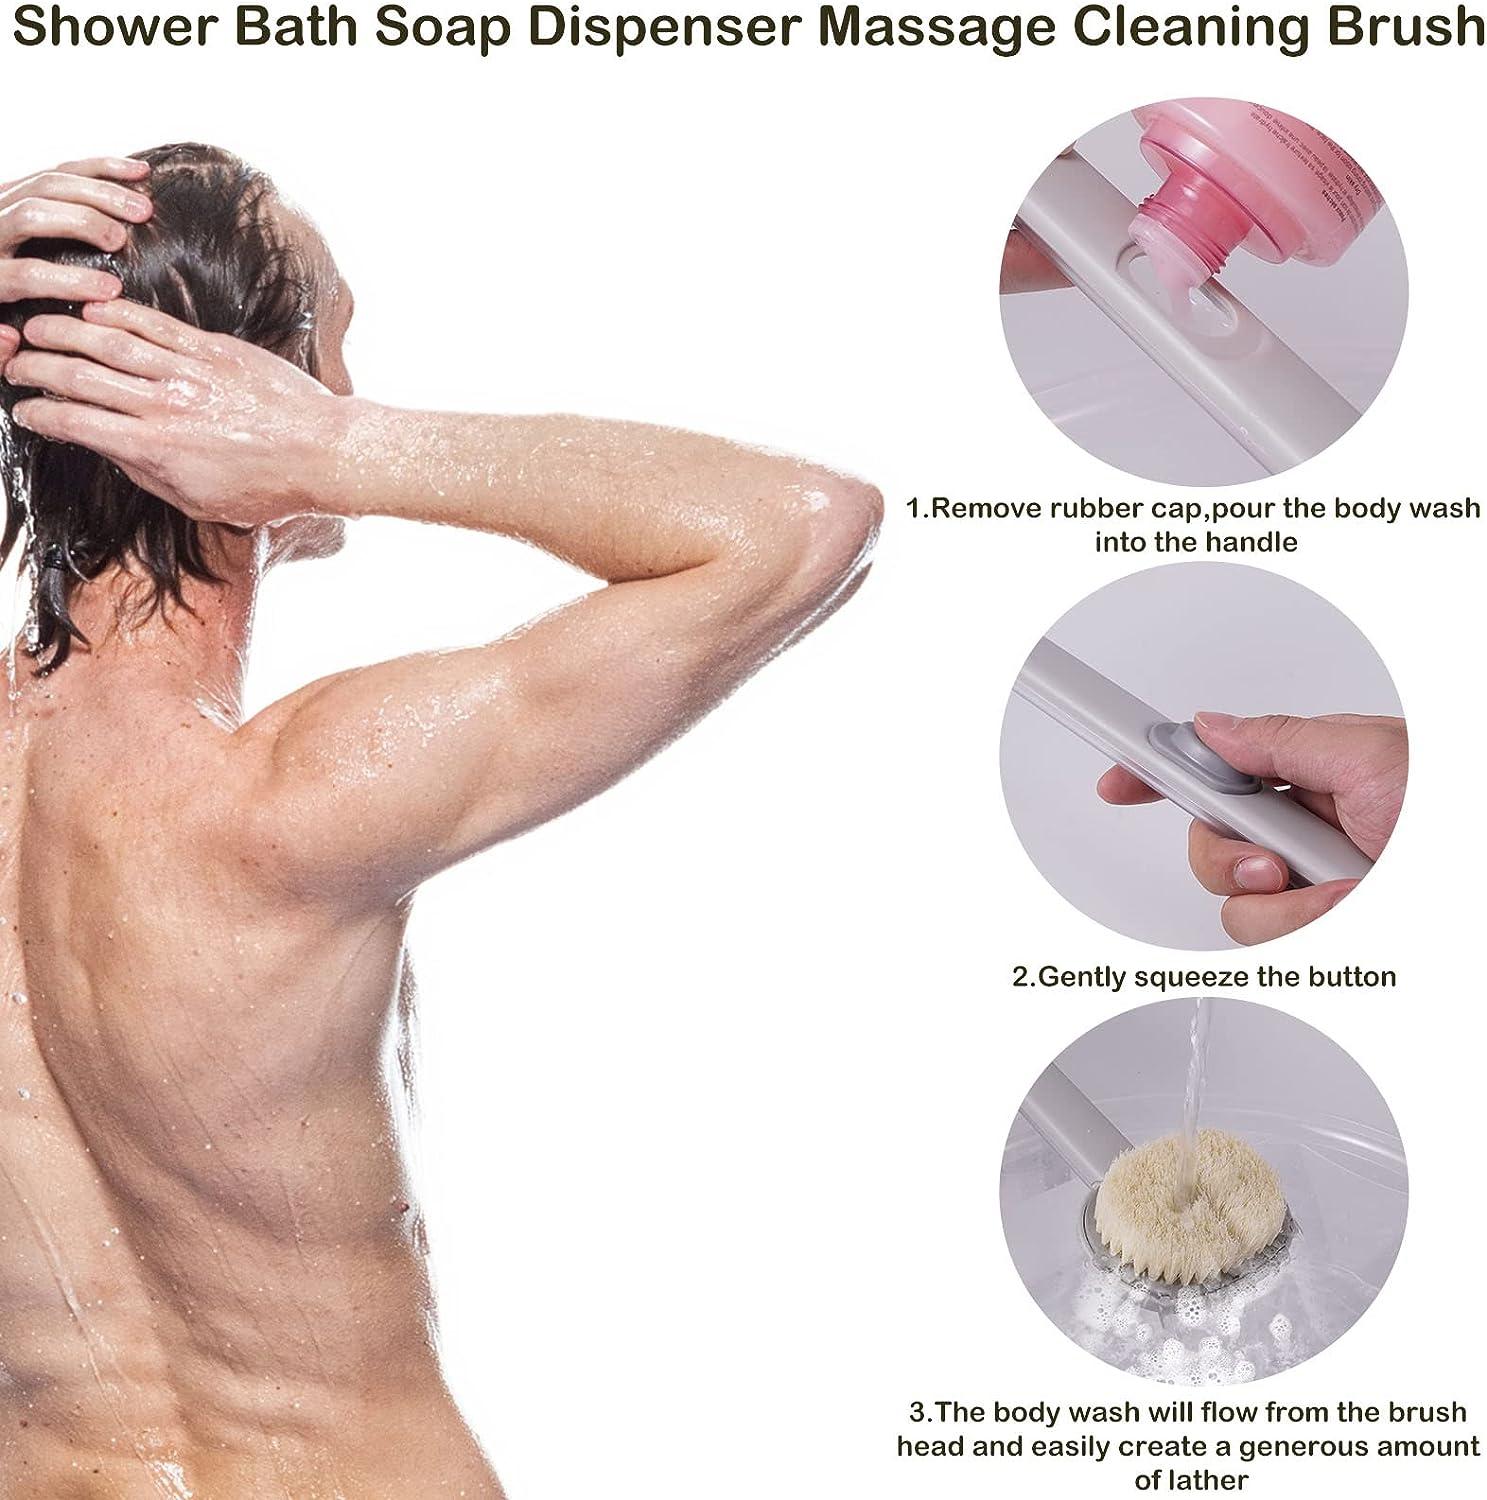 Back Brush Long Handle for Shower, Long Handled Shower Brush with Soap  Dispenser, Back Scrubber for Shower, Body Shower Sponge Scrubber Brush,  Bath